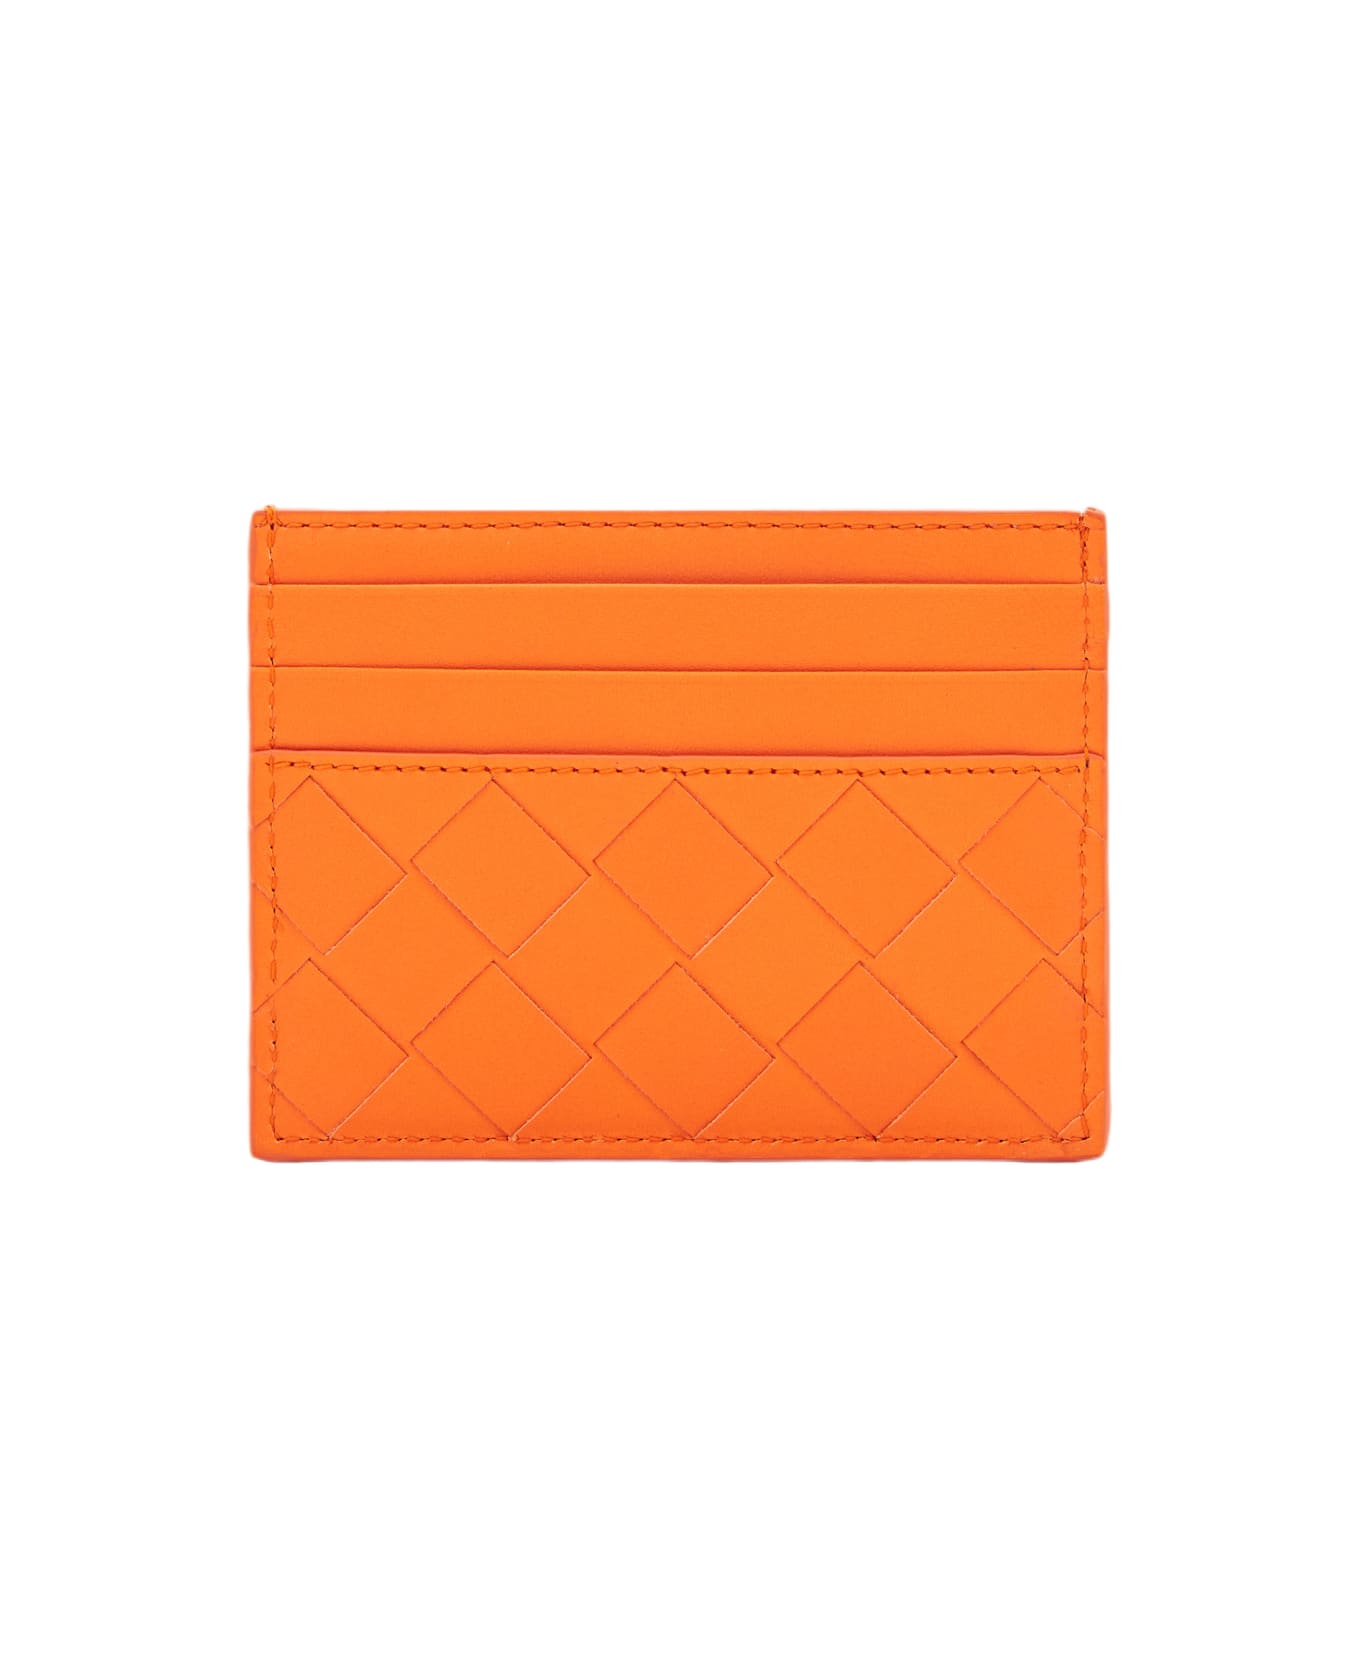 Bottega Veneta Intrecciato Classic Cardholder - Orange 財布